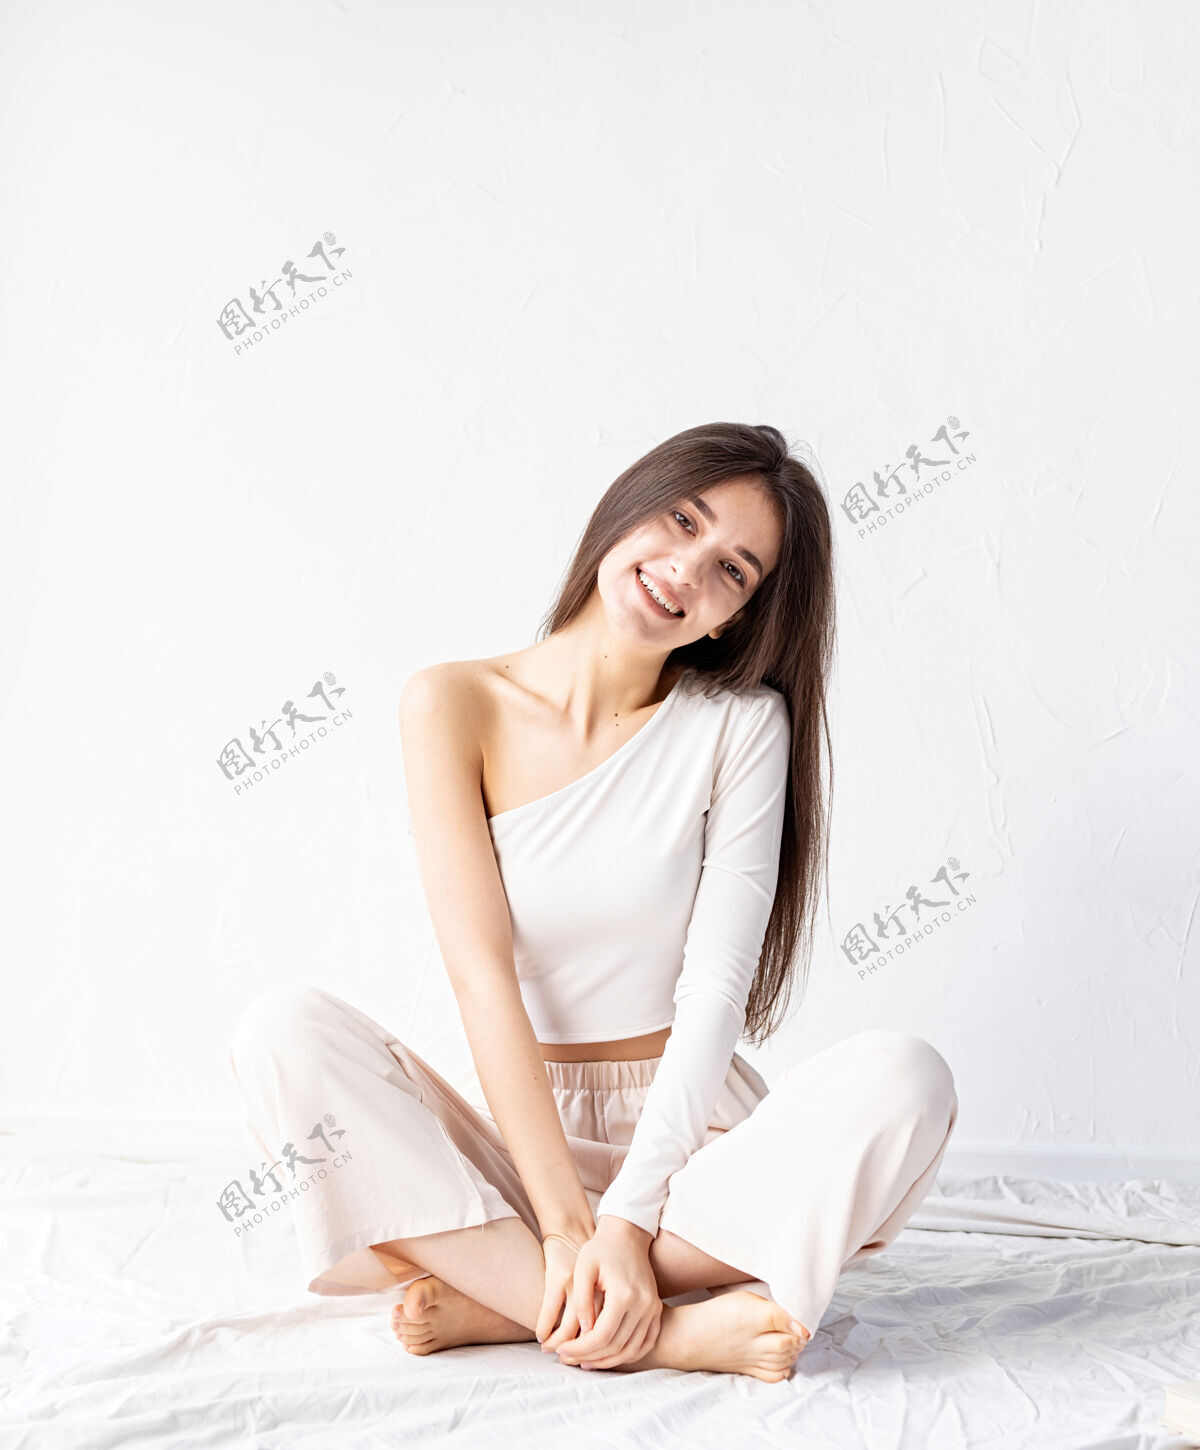 女人轻盈透气穿着白色舒适衣服坐在地板上的美女肖像积极年轻模型